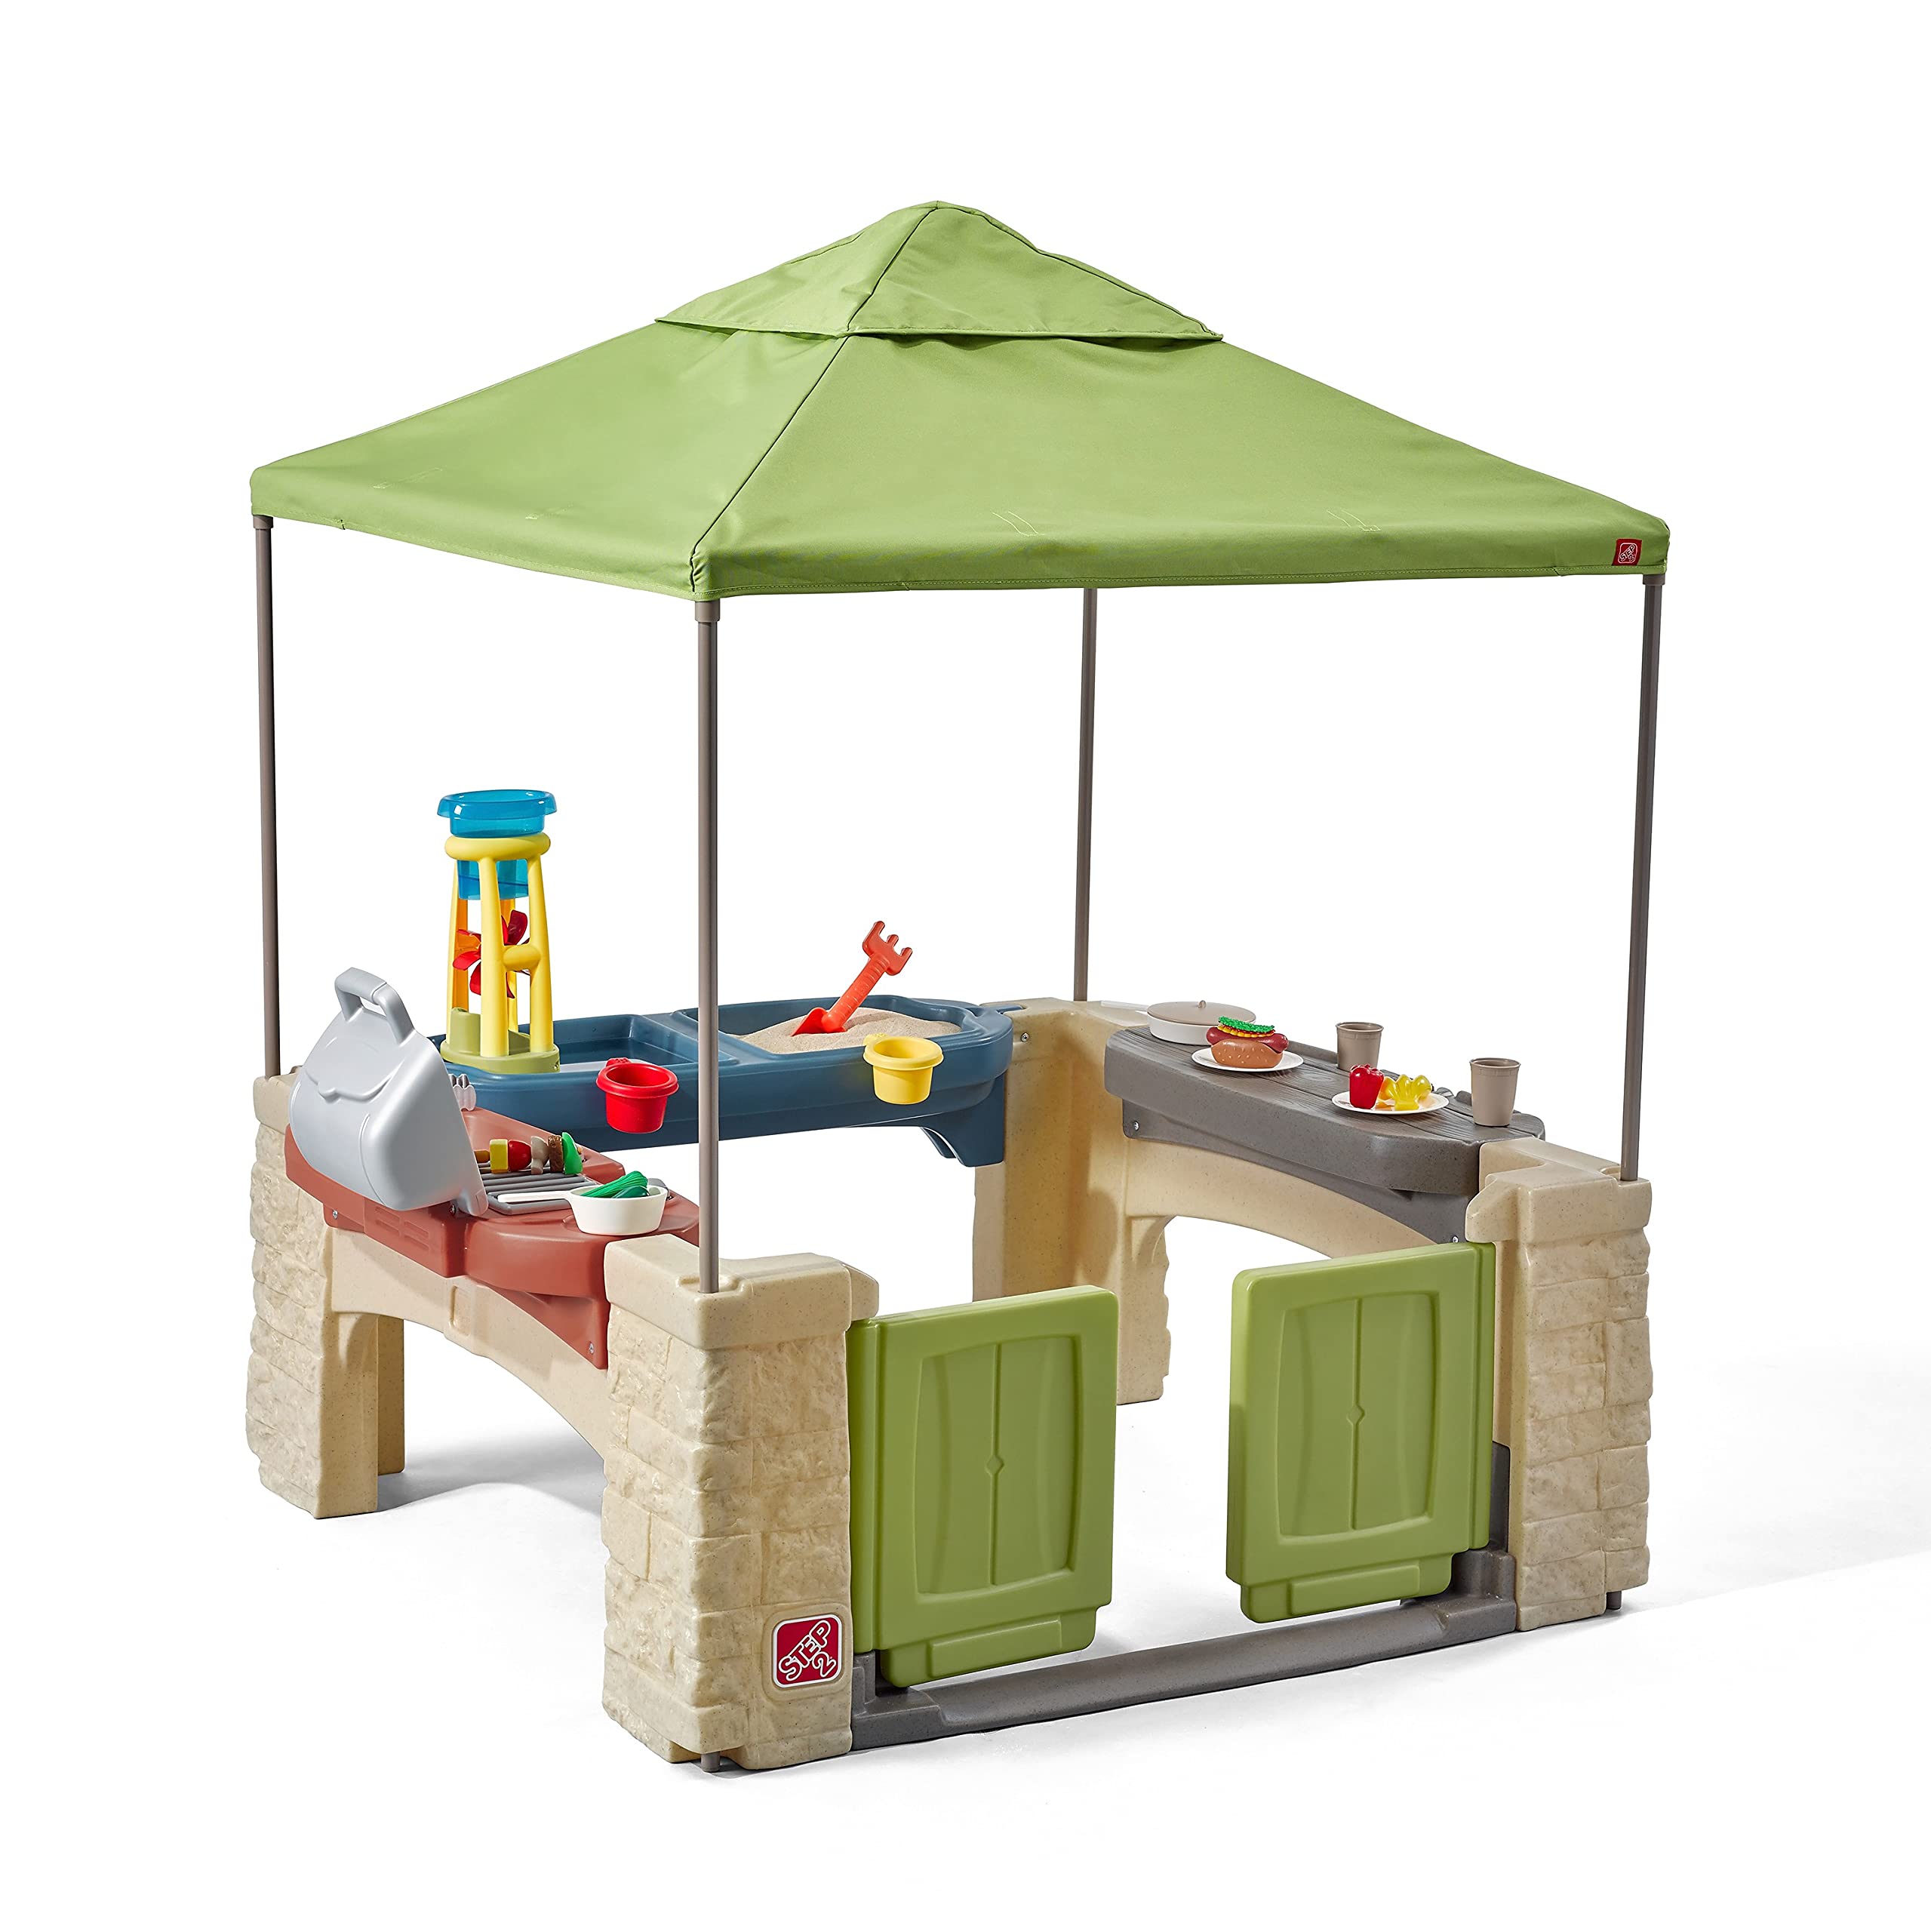  Step2 带天篷玩具套装的全方位游戏天井 适合儿童的阴凉户外游戏屋，具有逼真的互动功能，可供多个幼儿玩耍的空间 尺寸：60 英寸高 x 47.5 英寸宽 x 47.5...